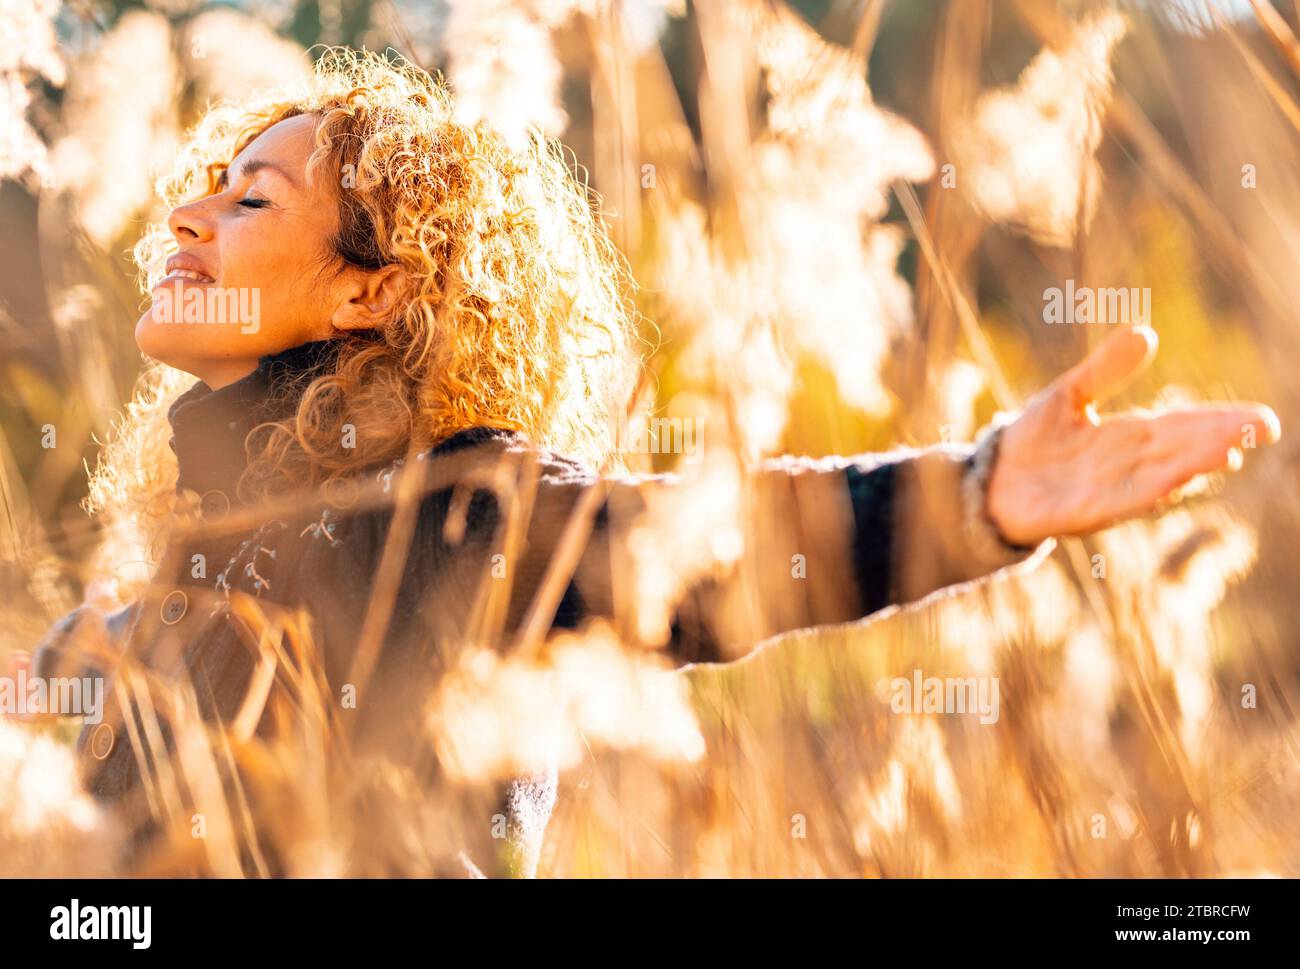 Una donna felice che si allunga alle braccia e si goda la natura sorridendo in un campo dorato con la luce del sole al tramonto. Persone e attività ricreative all'aperto. Felicità e benessere donna stile di vita. Libertà. Overjoy Life Foto Stock